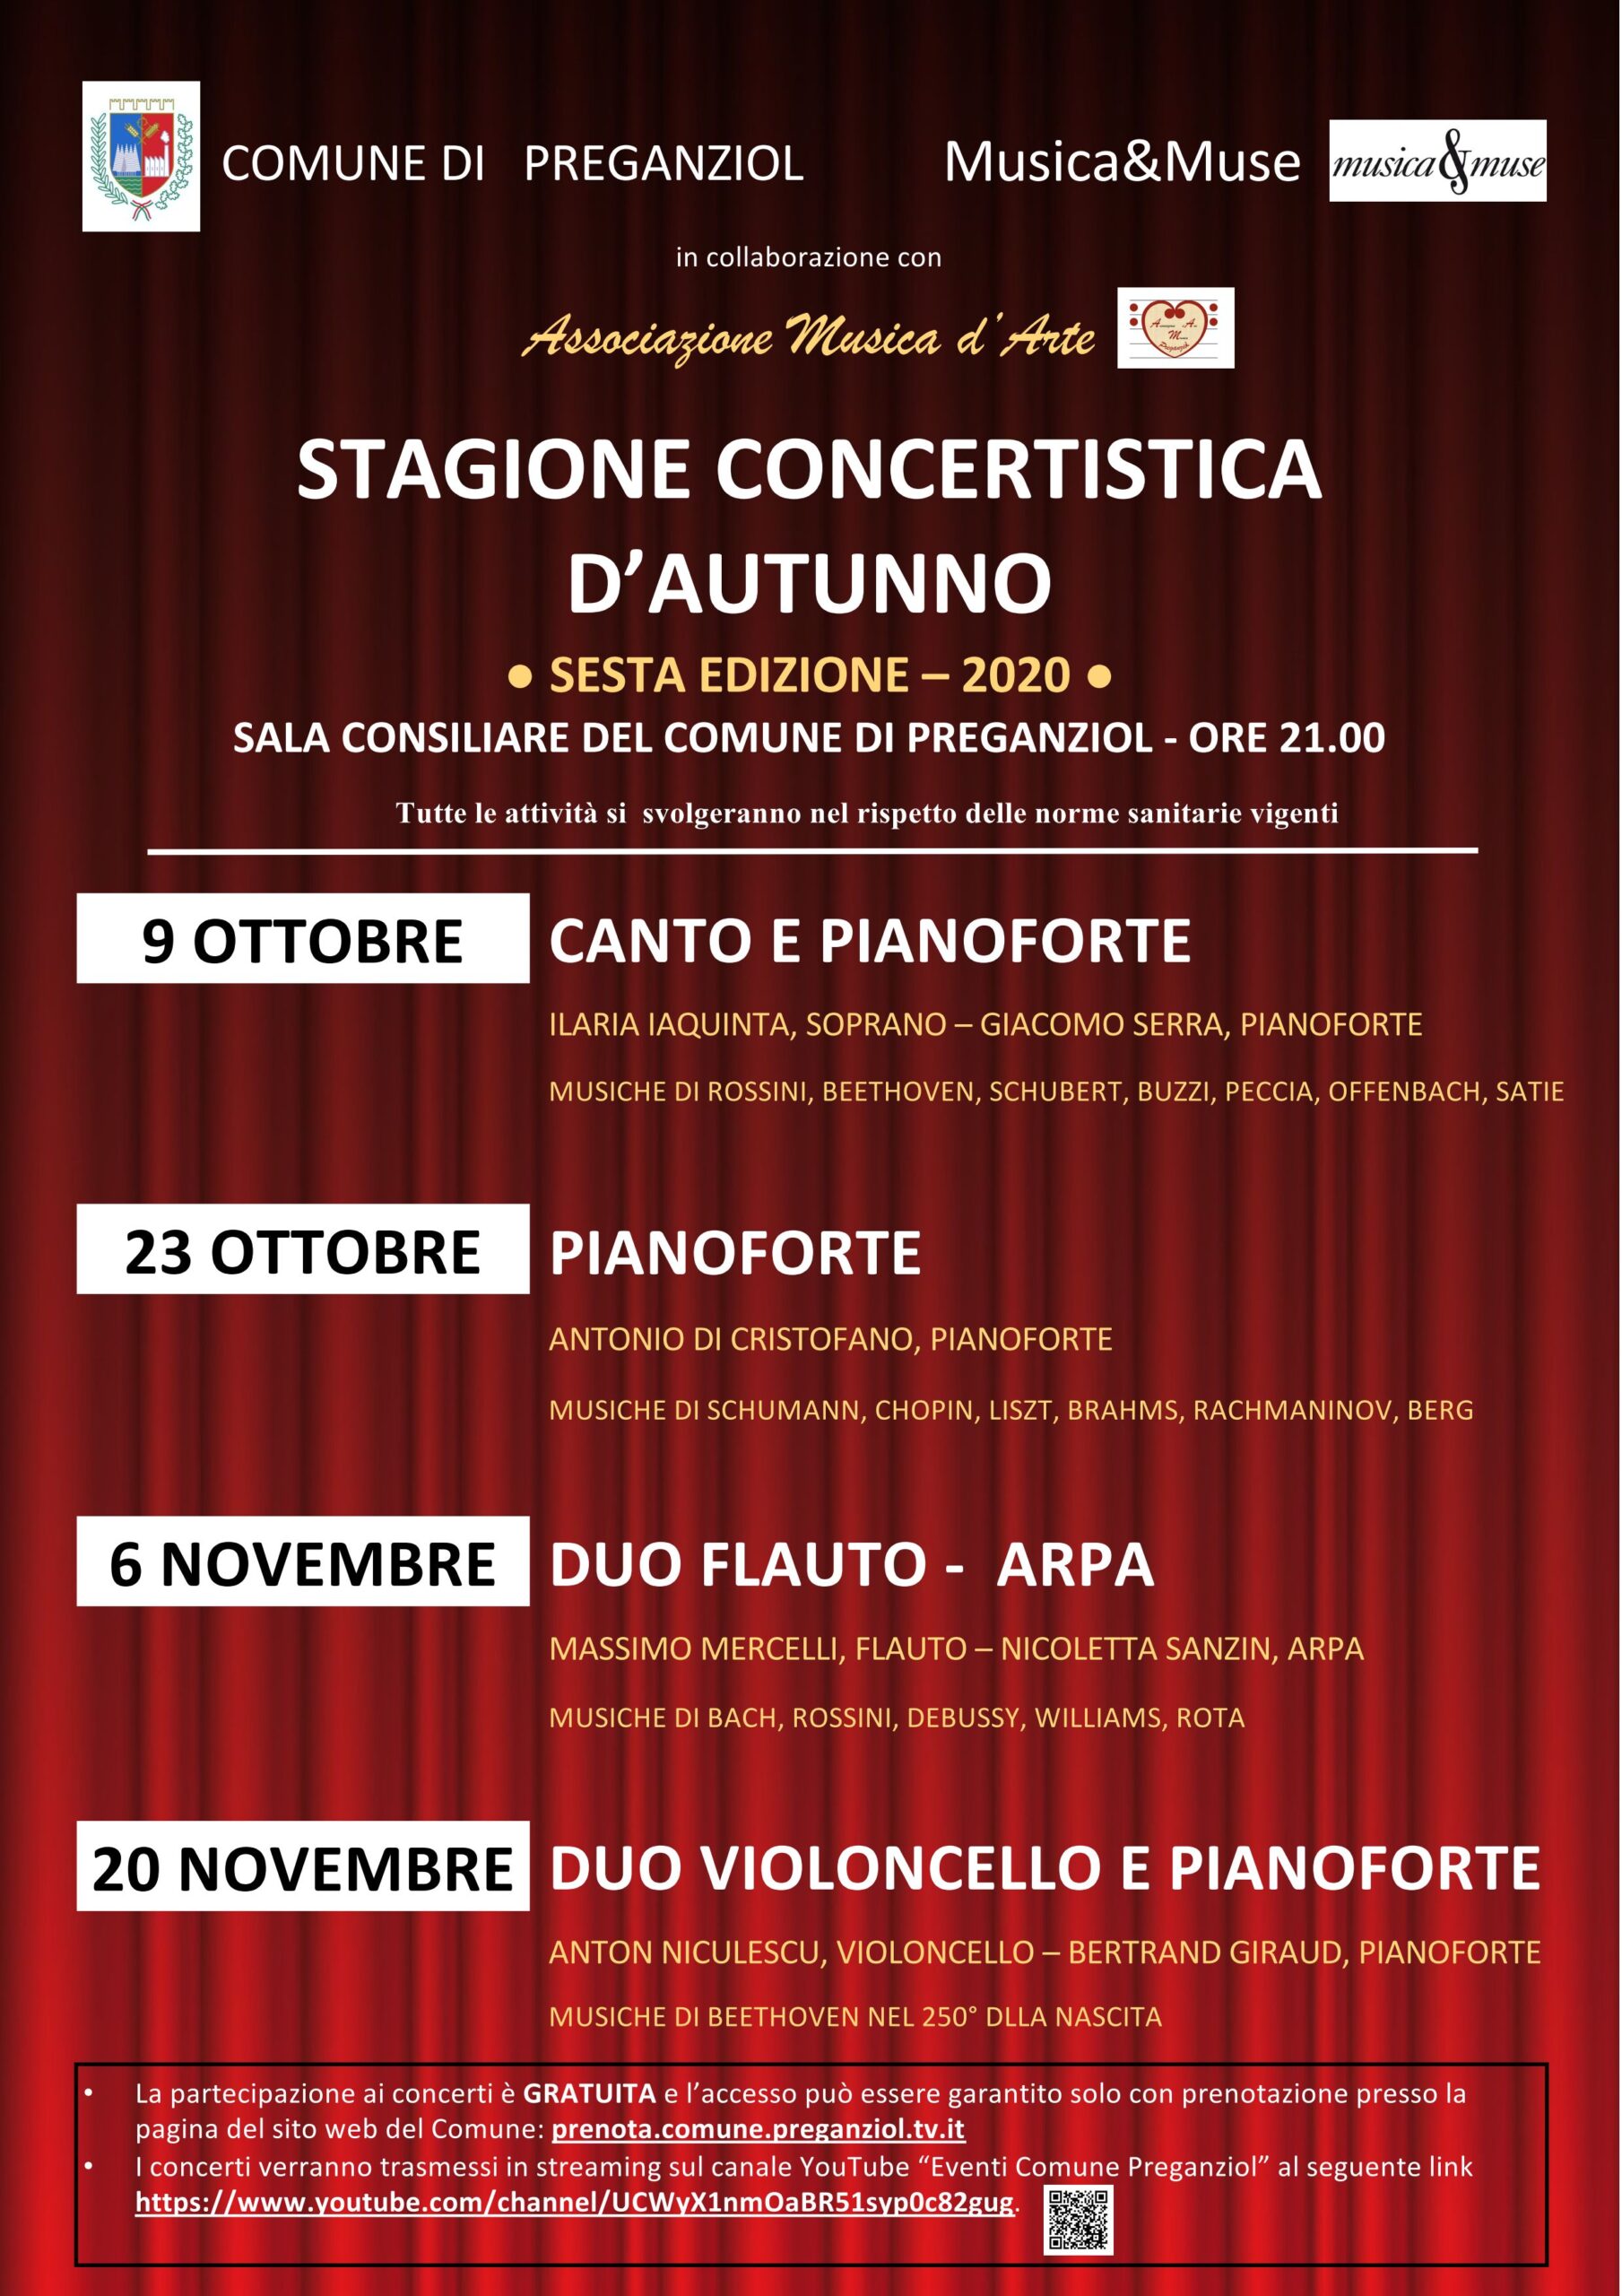 Stagione concertistica d’autunno – Venerdì 23 ottobre 2020: PIANOFORTE